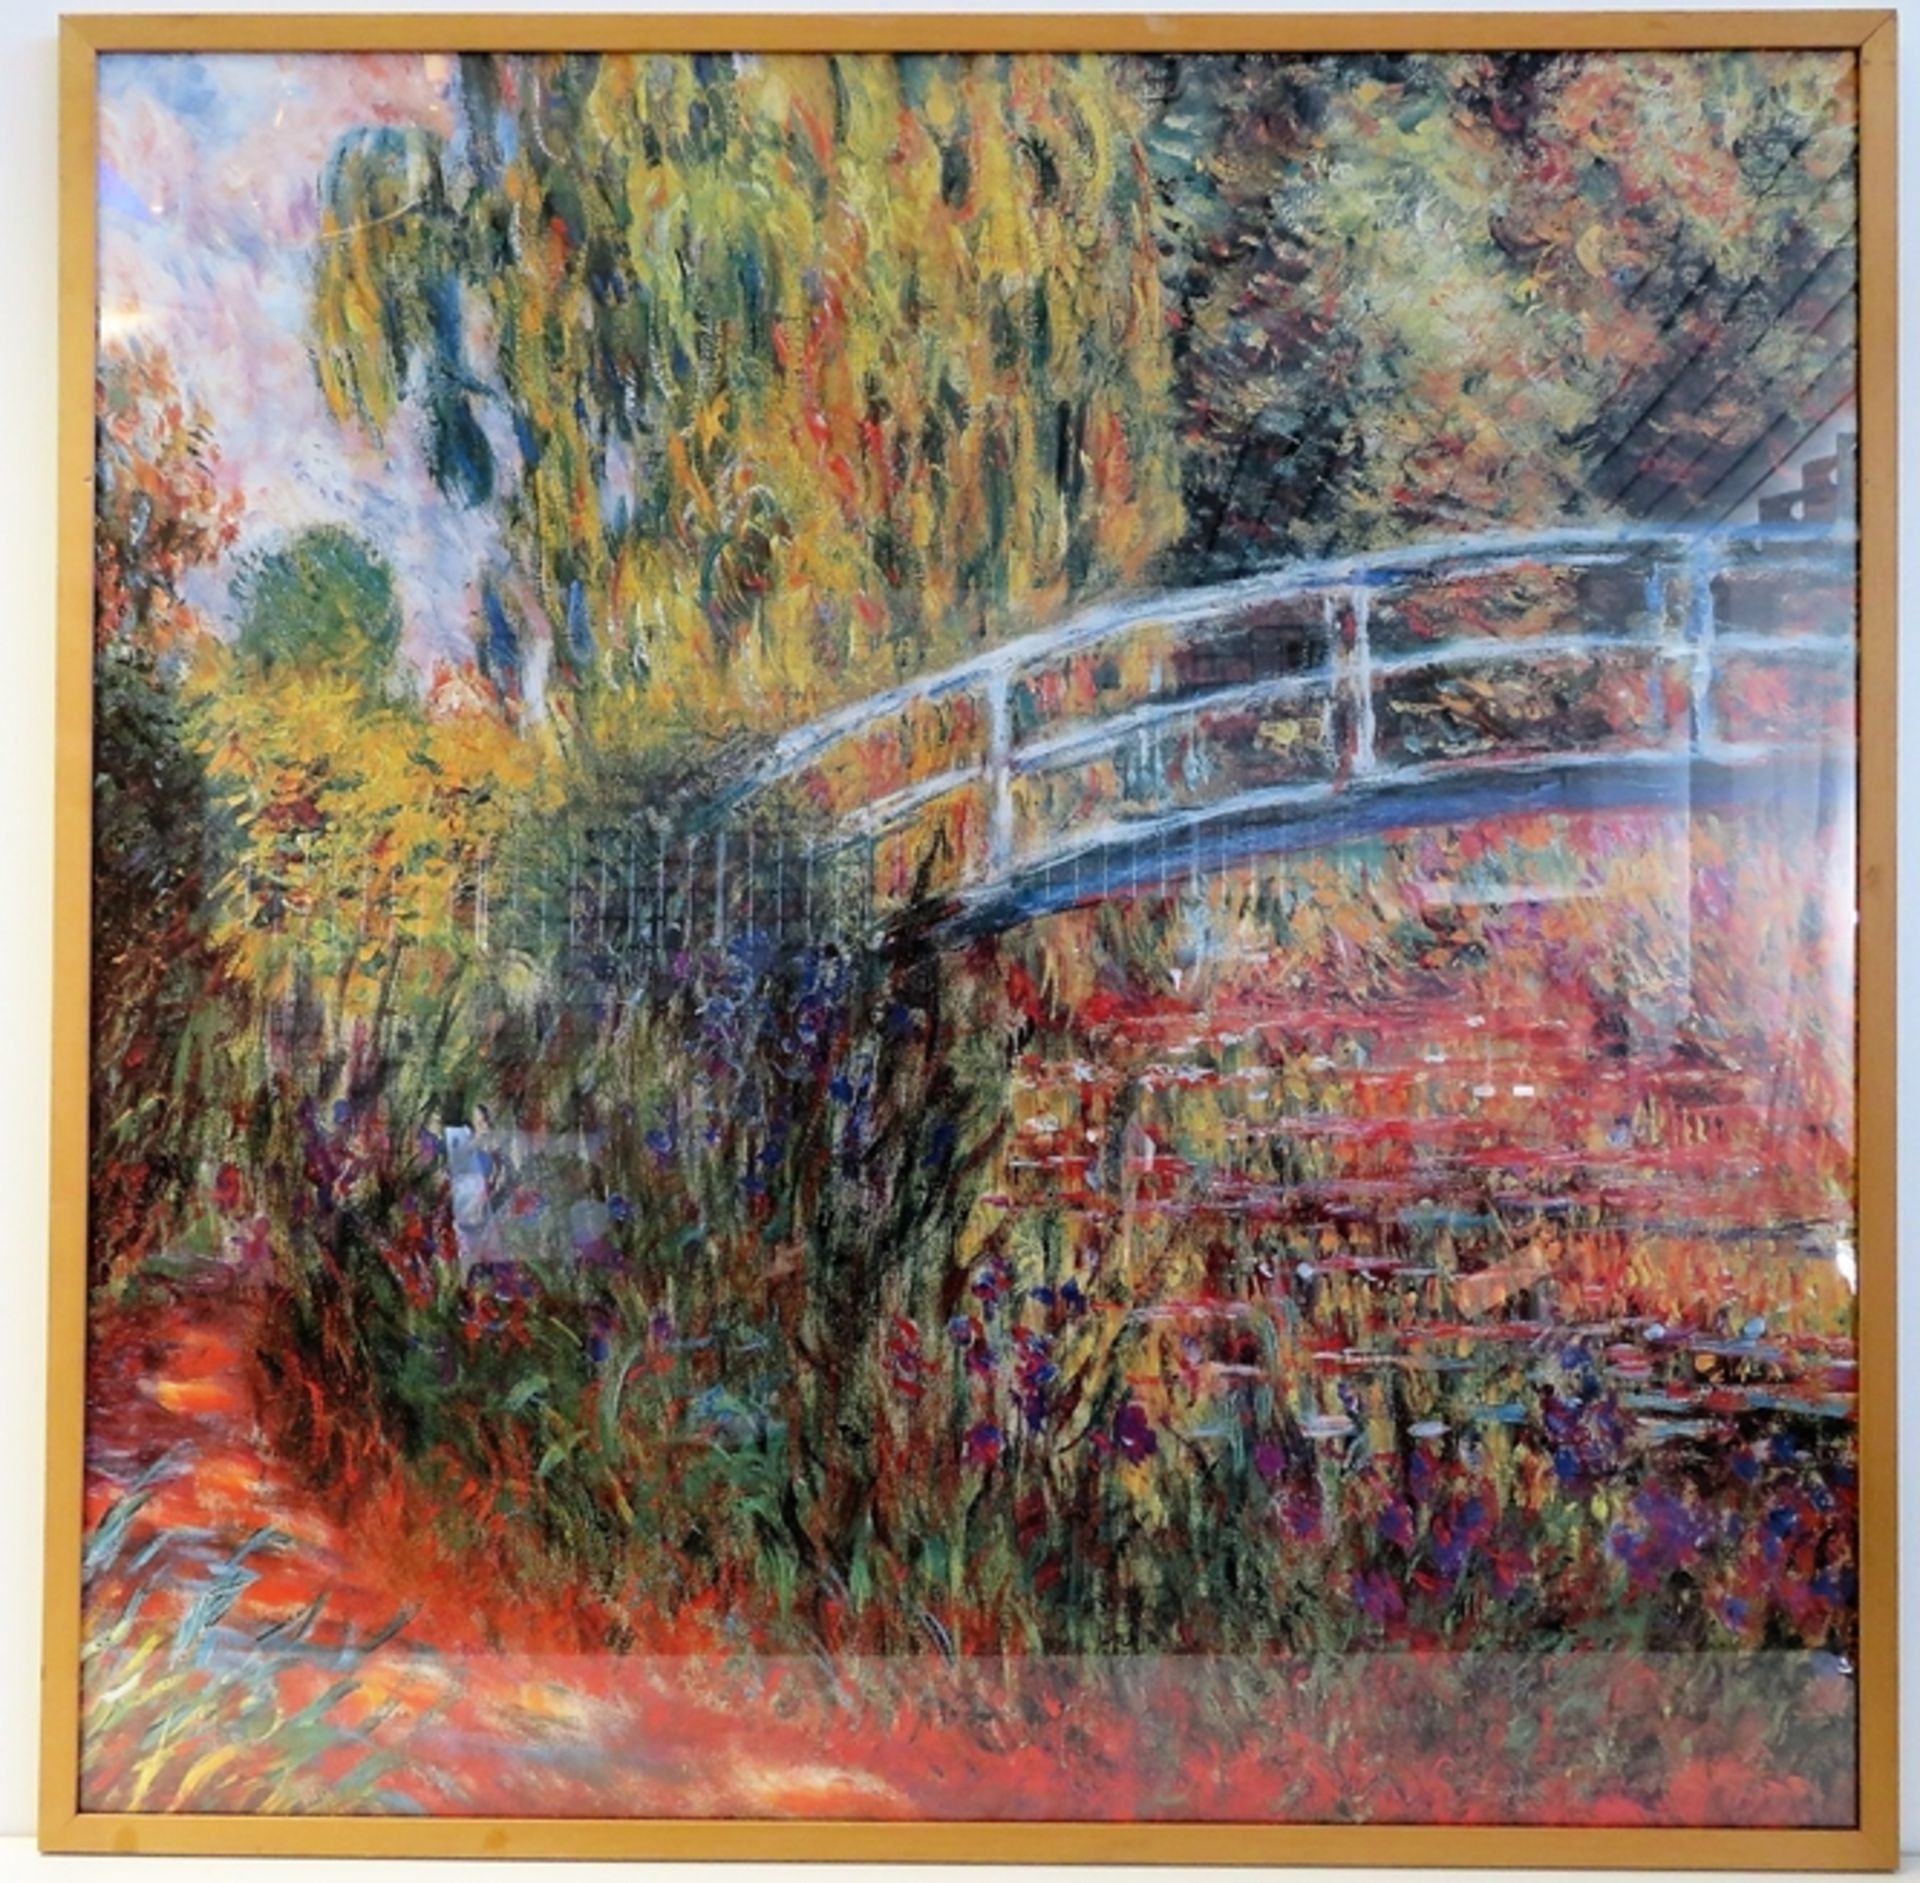 Kunstdruck im Rahmen, "Japanische Brücke im Garten von Giverny" von Claude Monet, 94 x 94 cm, R. [9